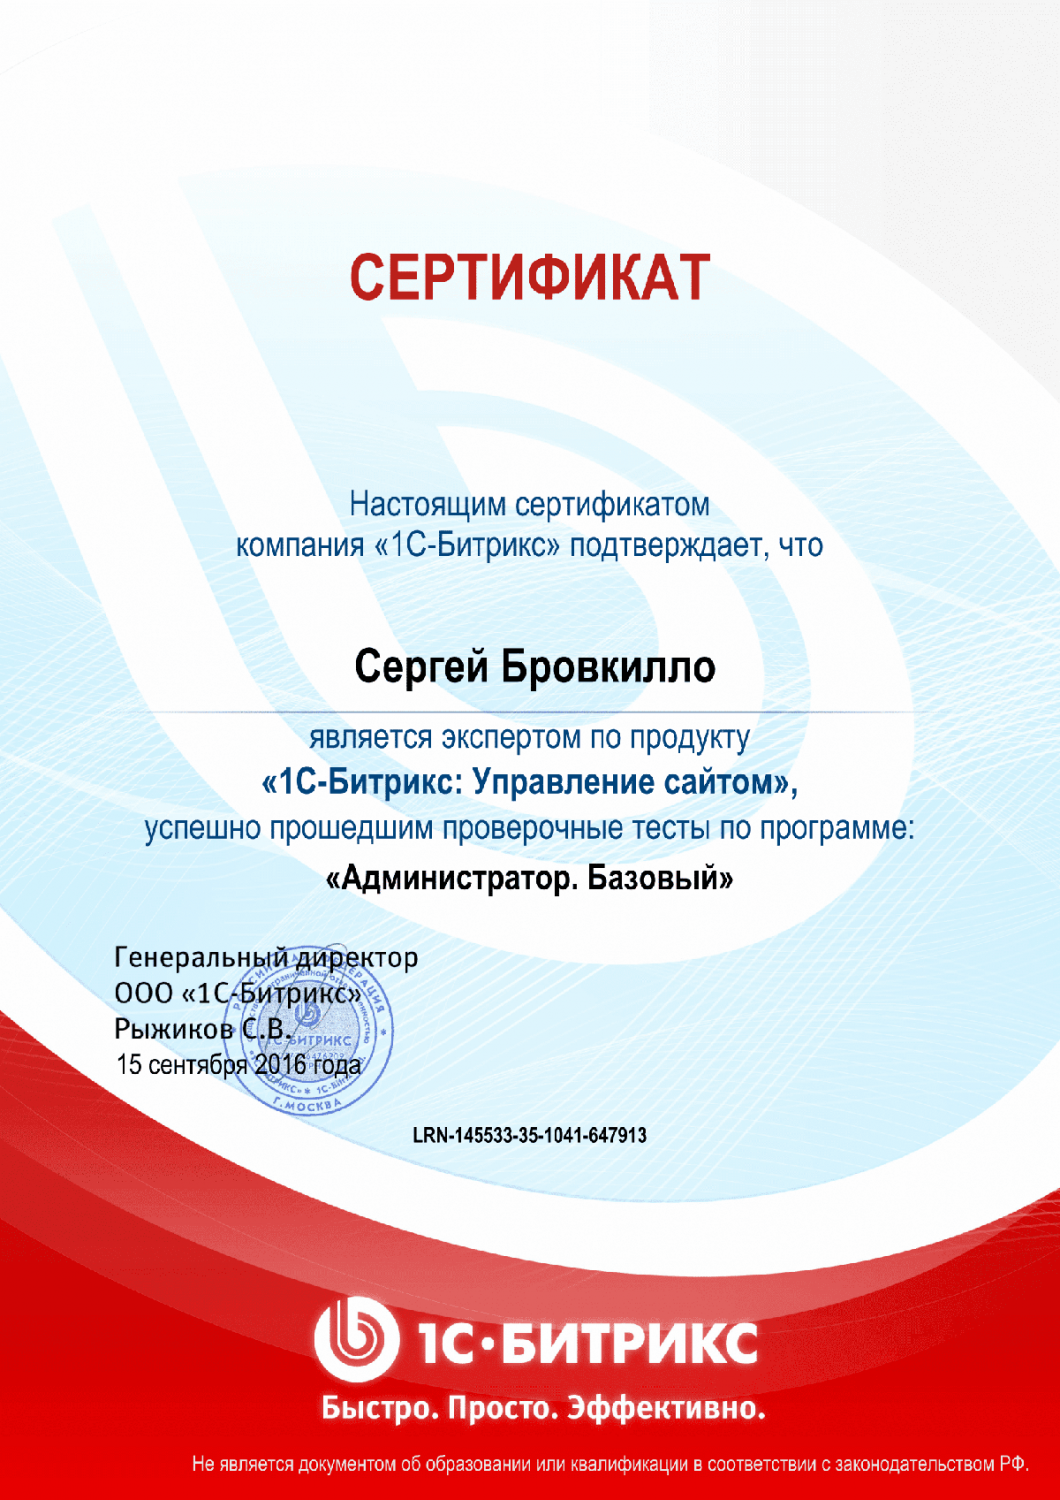 Сертификат эксперта по программе "Администратор. Базовый" в Читы